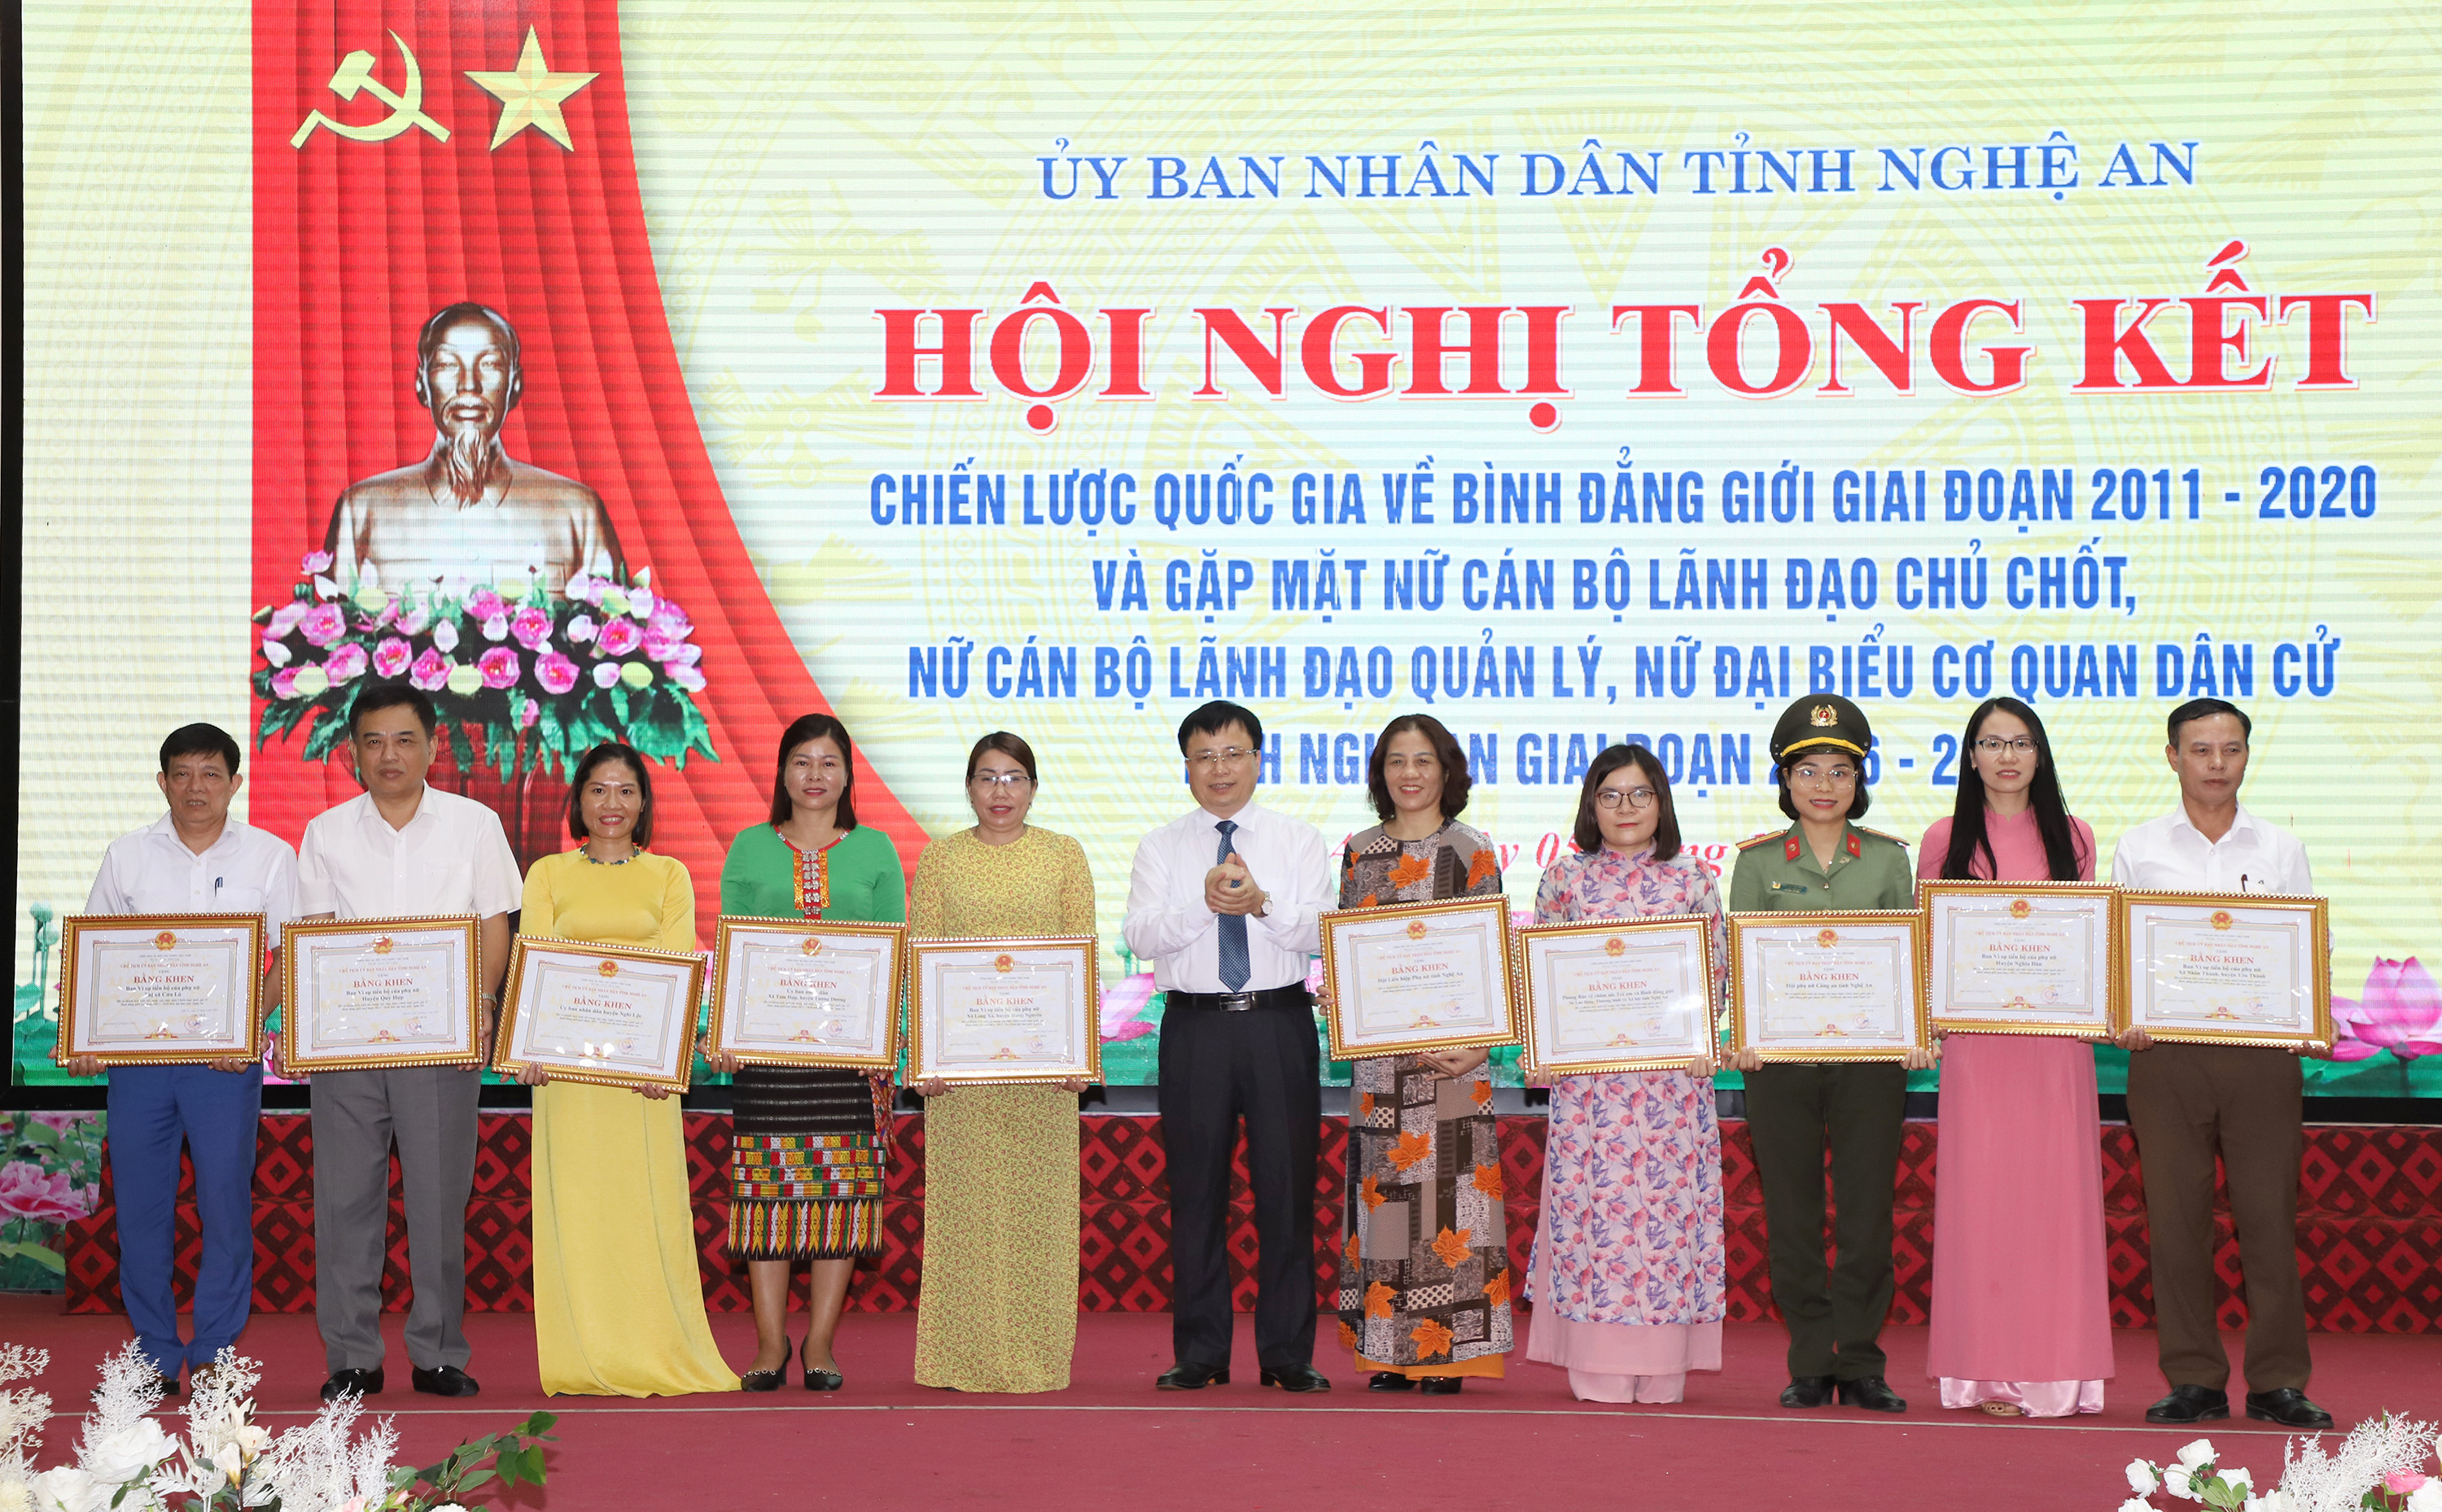 Đồng chí Bùi Đình Long - Phó Chủ tịch UBND tỉnh trao Bằng khen cho 10 tập thể có thành tích xuất sắc trong việc thực hiện Chiến lược quốc gia về bình đẳng giới tỉnh Nghệ An giai đoạn 2011-2020.